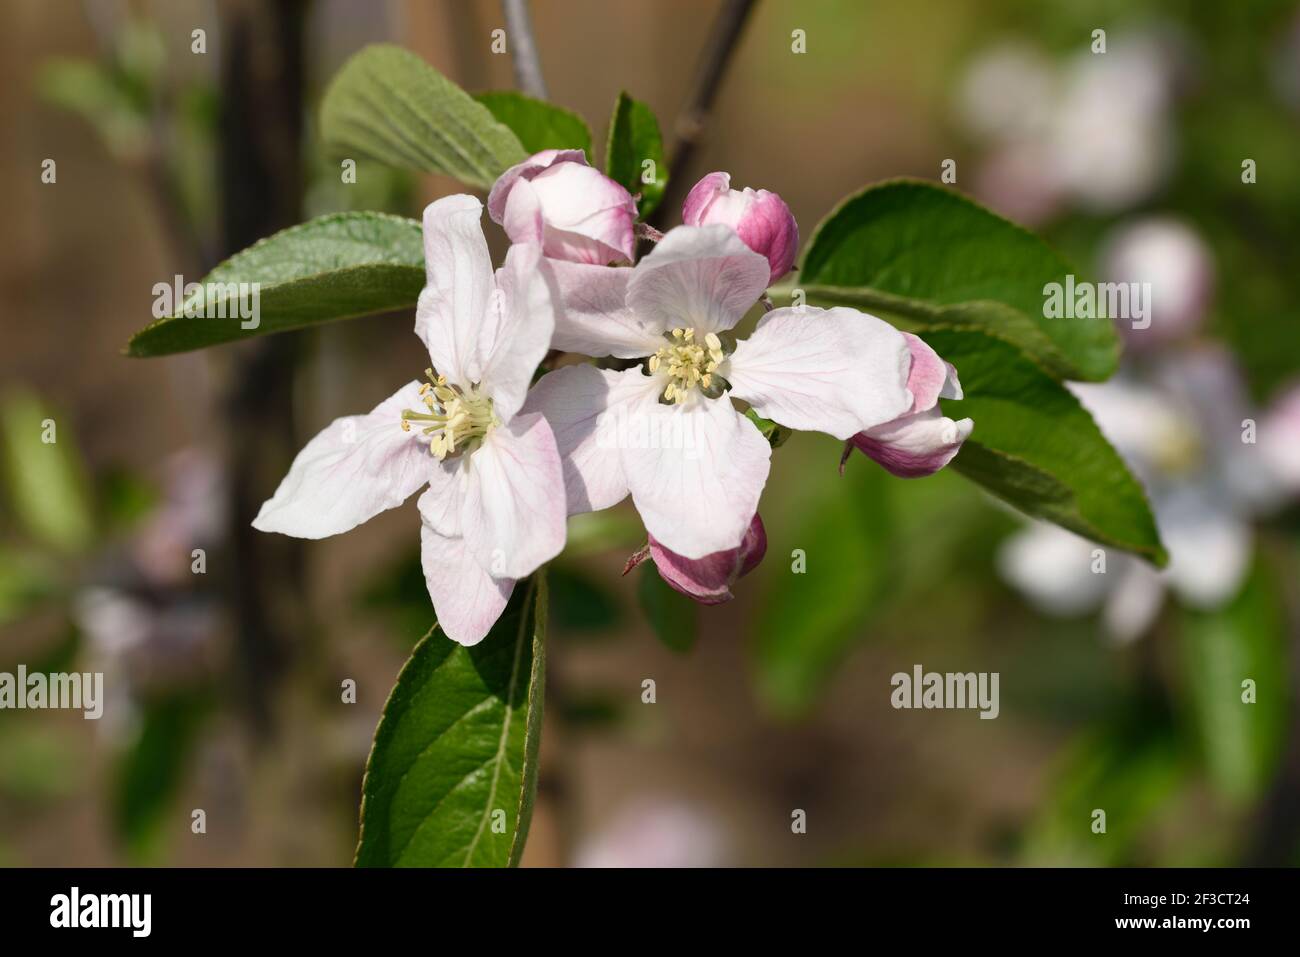 Malus domestica  Apple blossom Stock Photo